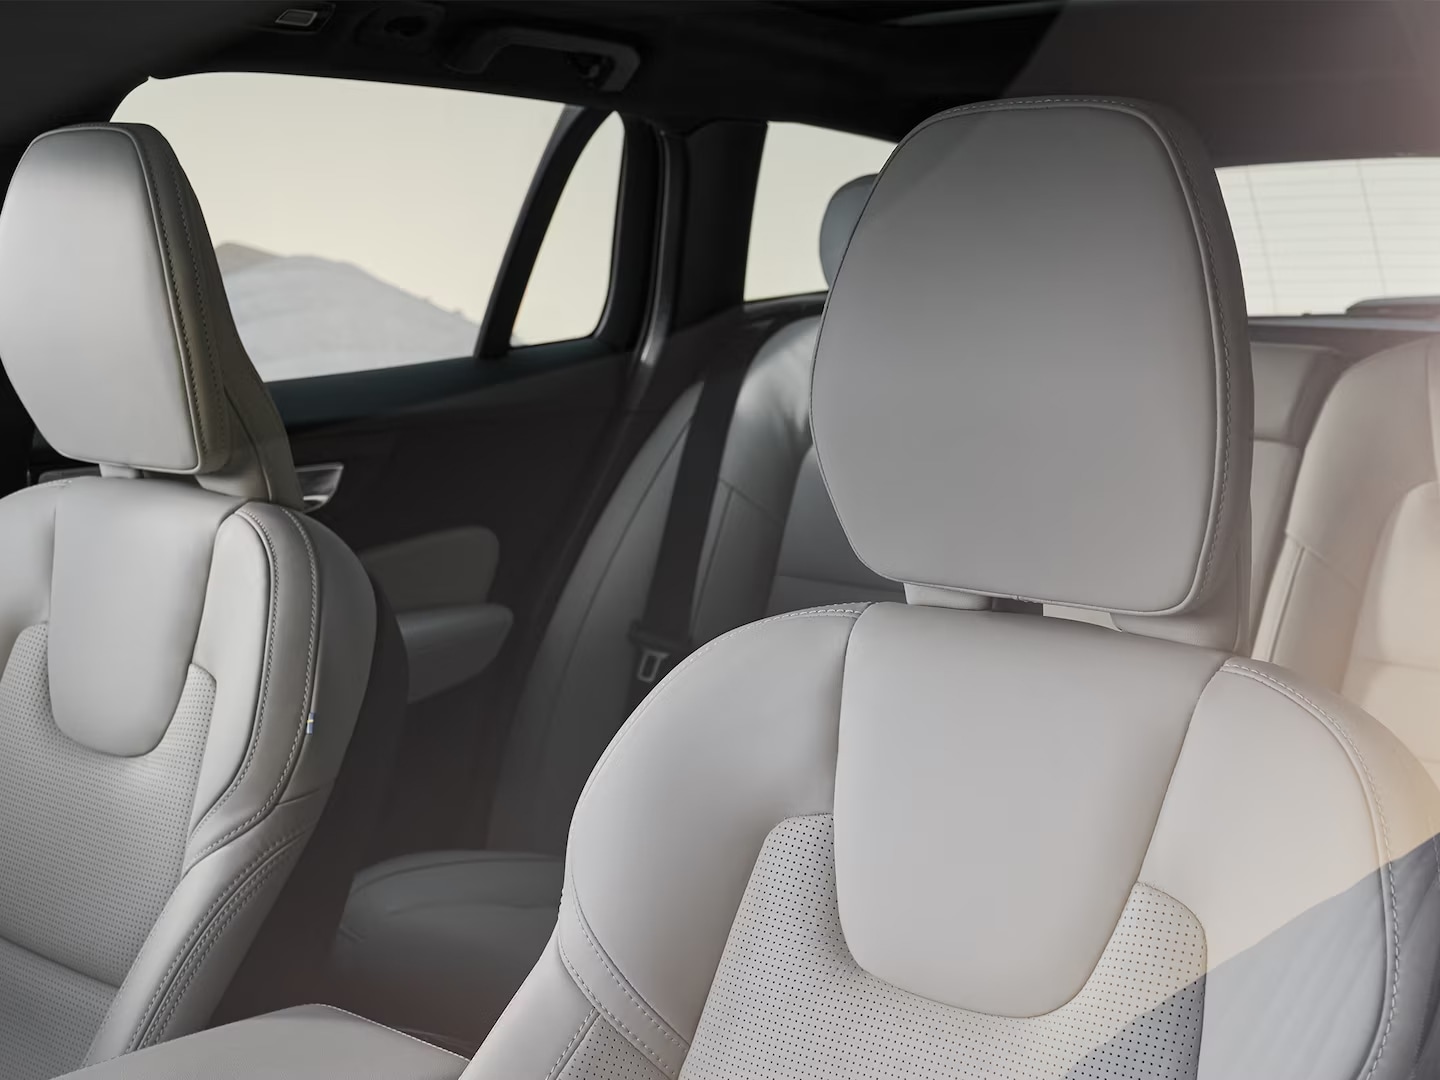 Diseño de los asientos delanteros en cuero claro del Volvo V60 Cross Country.